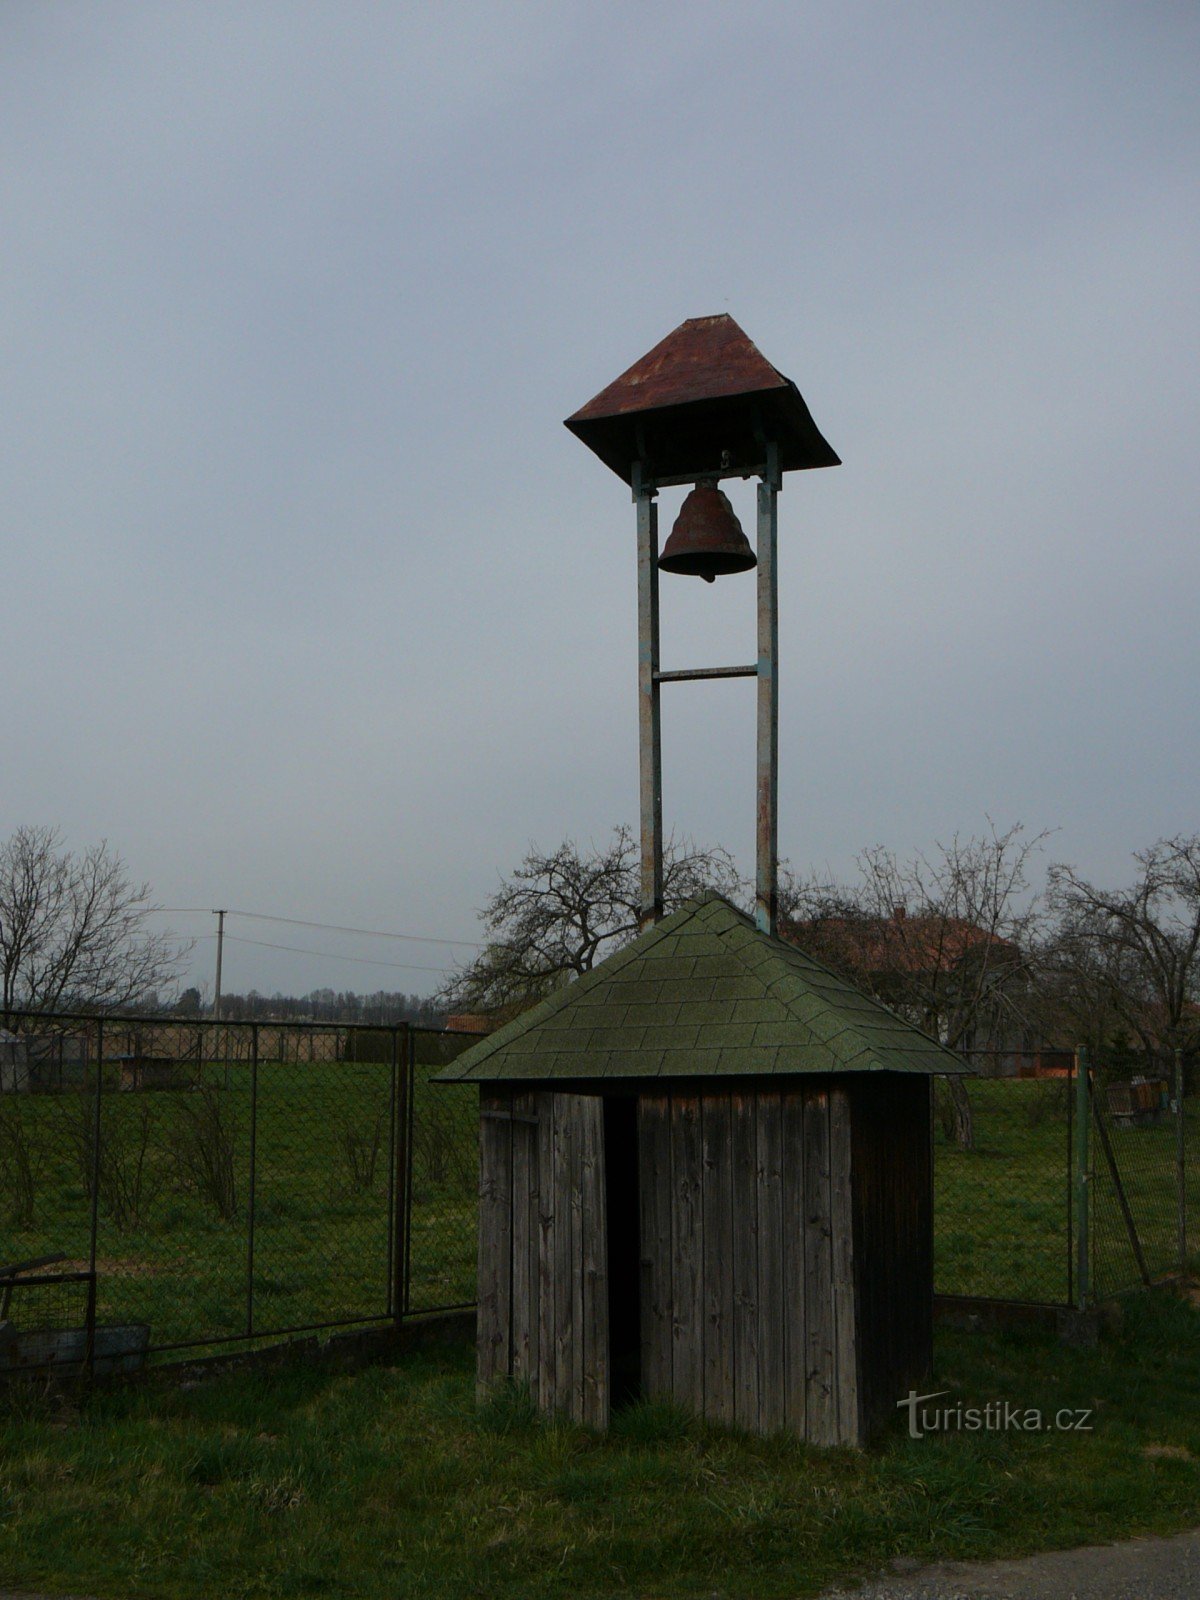 klokkentoren van Kocurovice